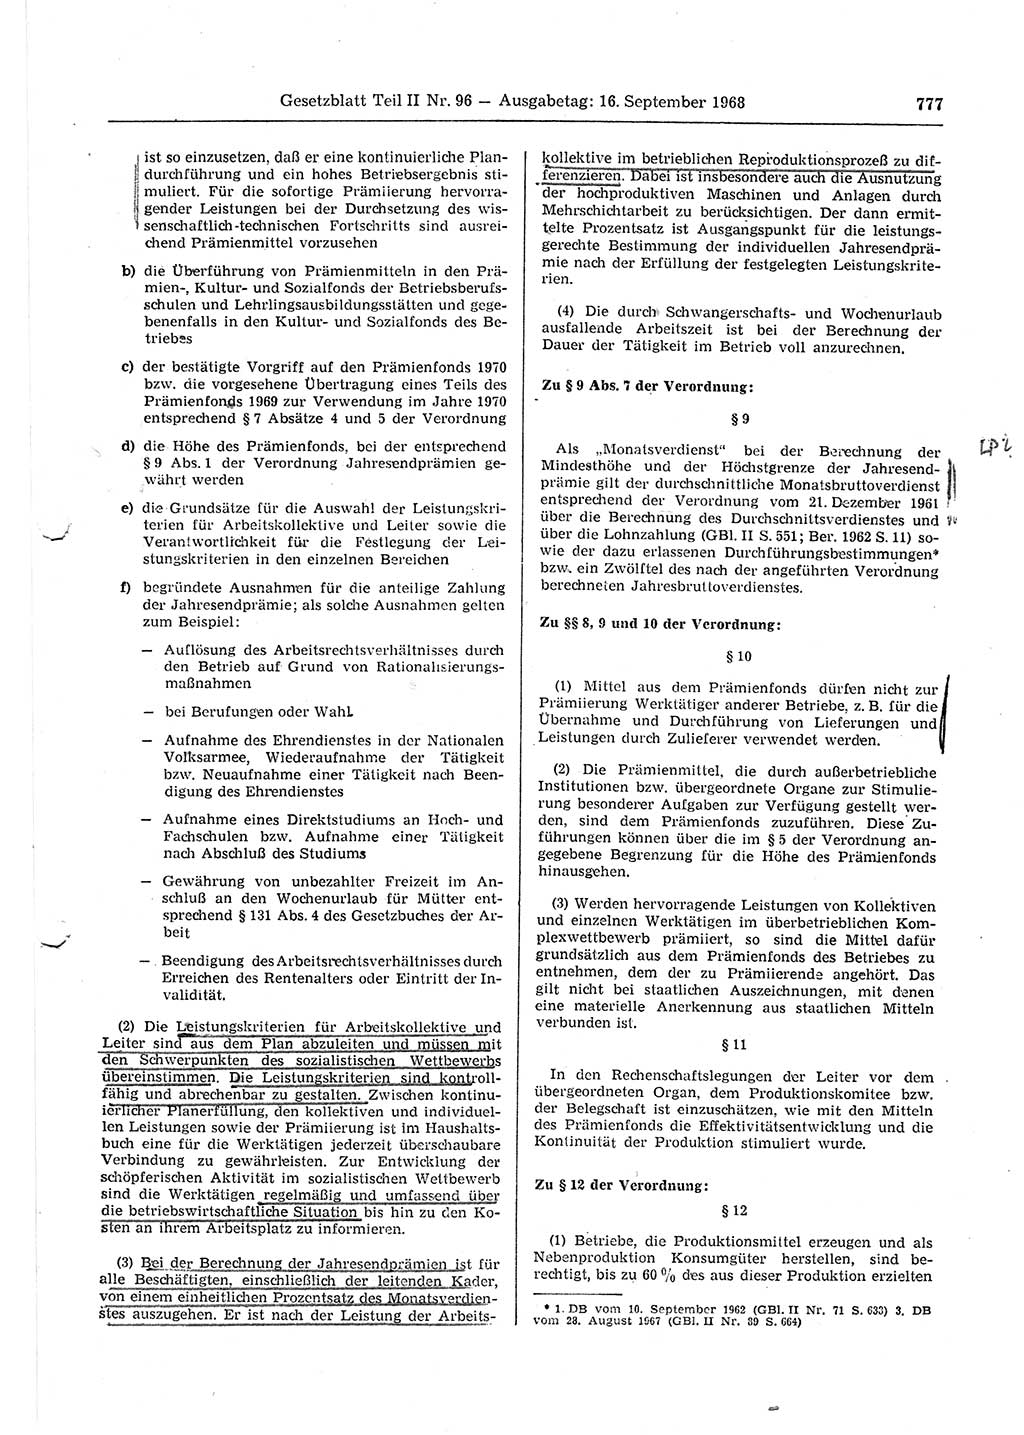 Gesetzblatt (GBl.) der Deutschen Demokratischen Republik (DDR) Teil ⅠⅠ 1968, Seite 777 (GBl. DDR ⅠⅠ 1968, S. 777)